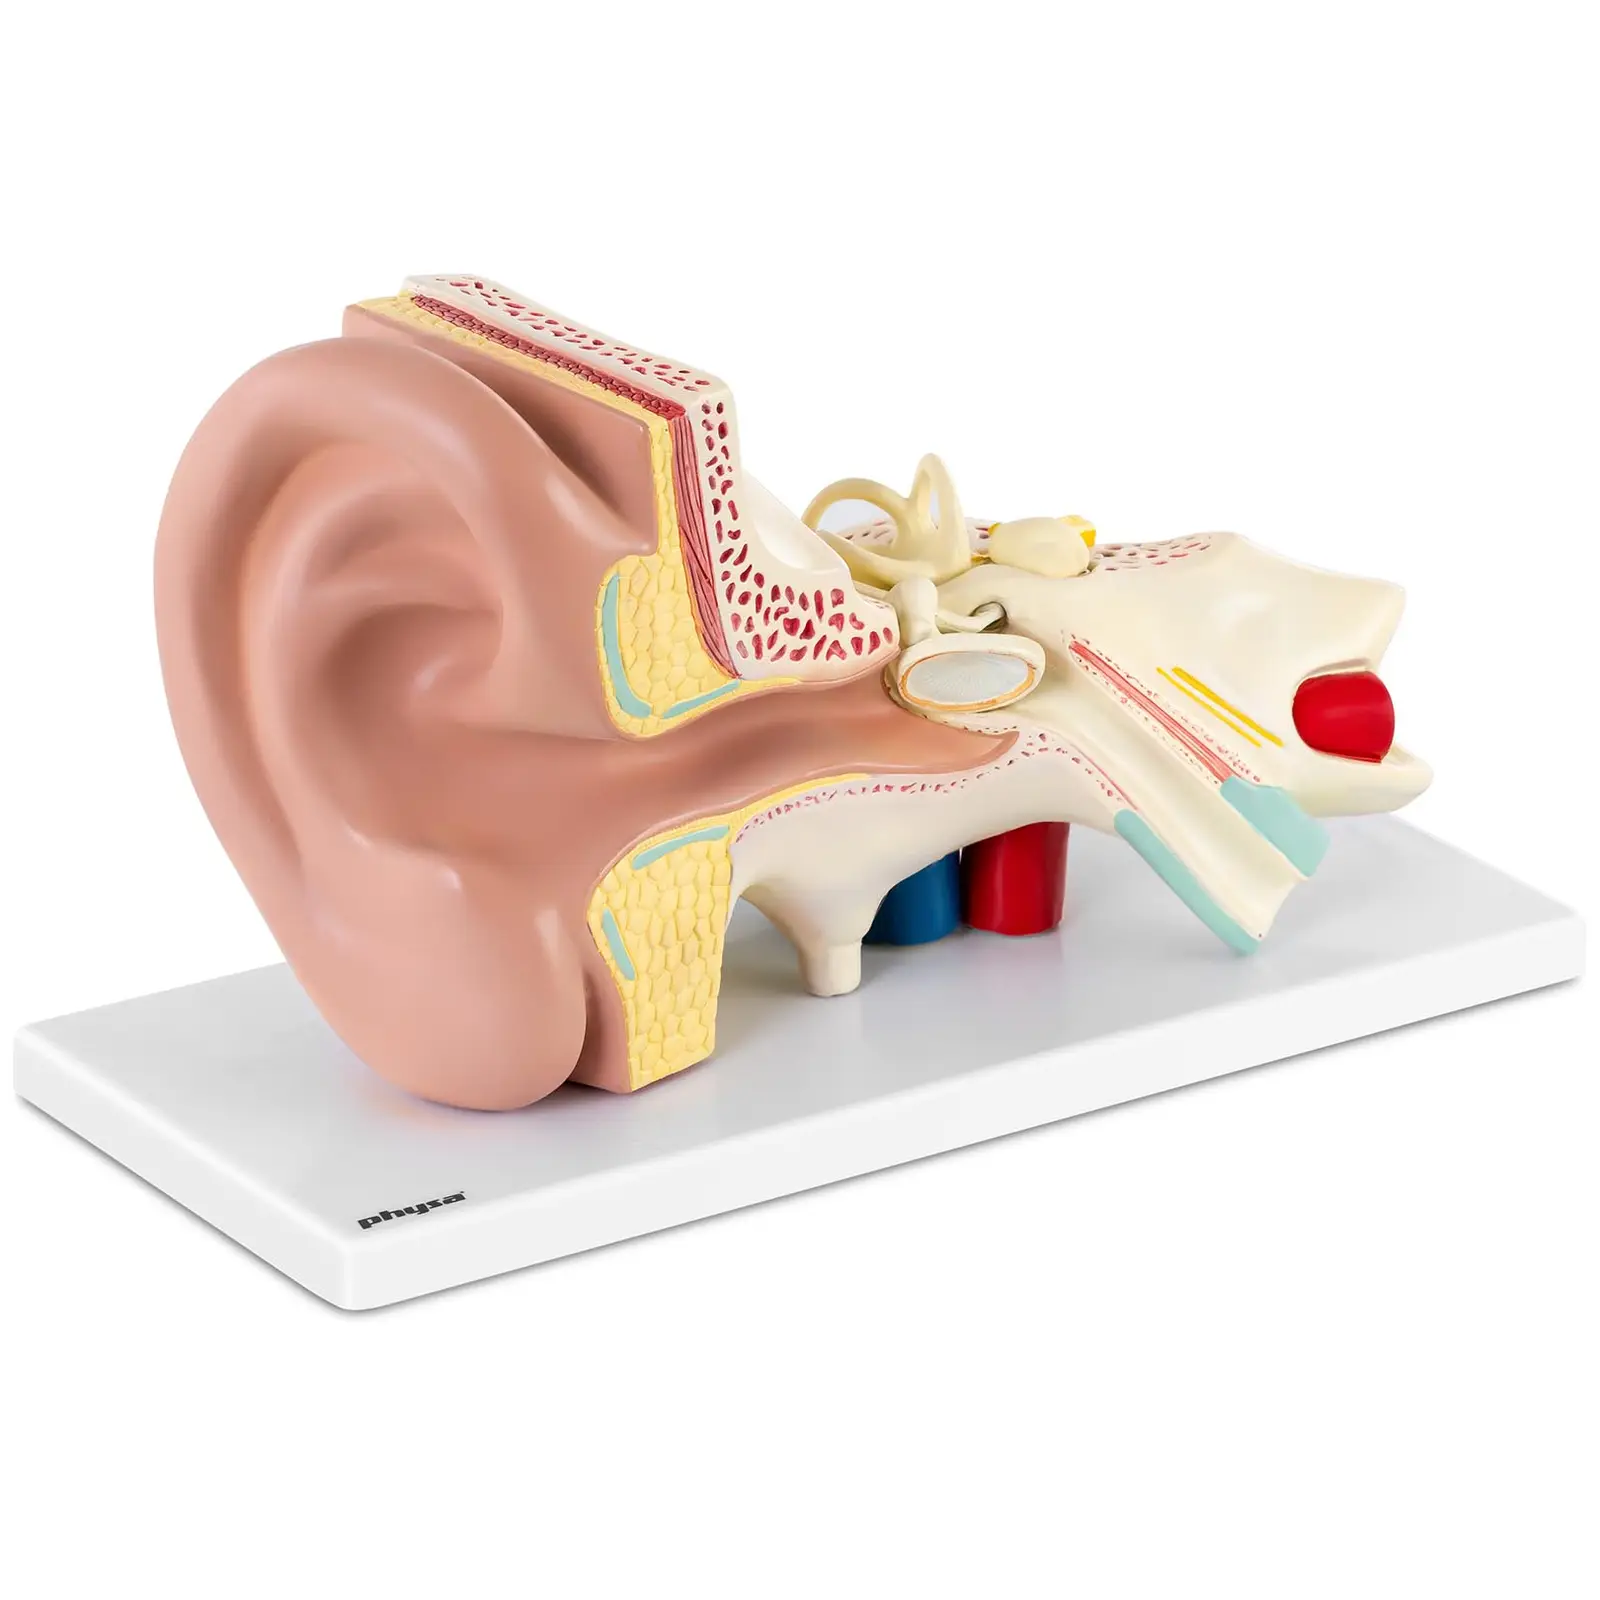 Model ucha rozložitelný na 4 částí trojnásobně zvětšený - Anatomické modely physa